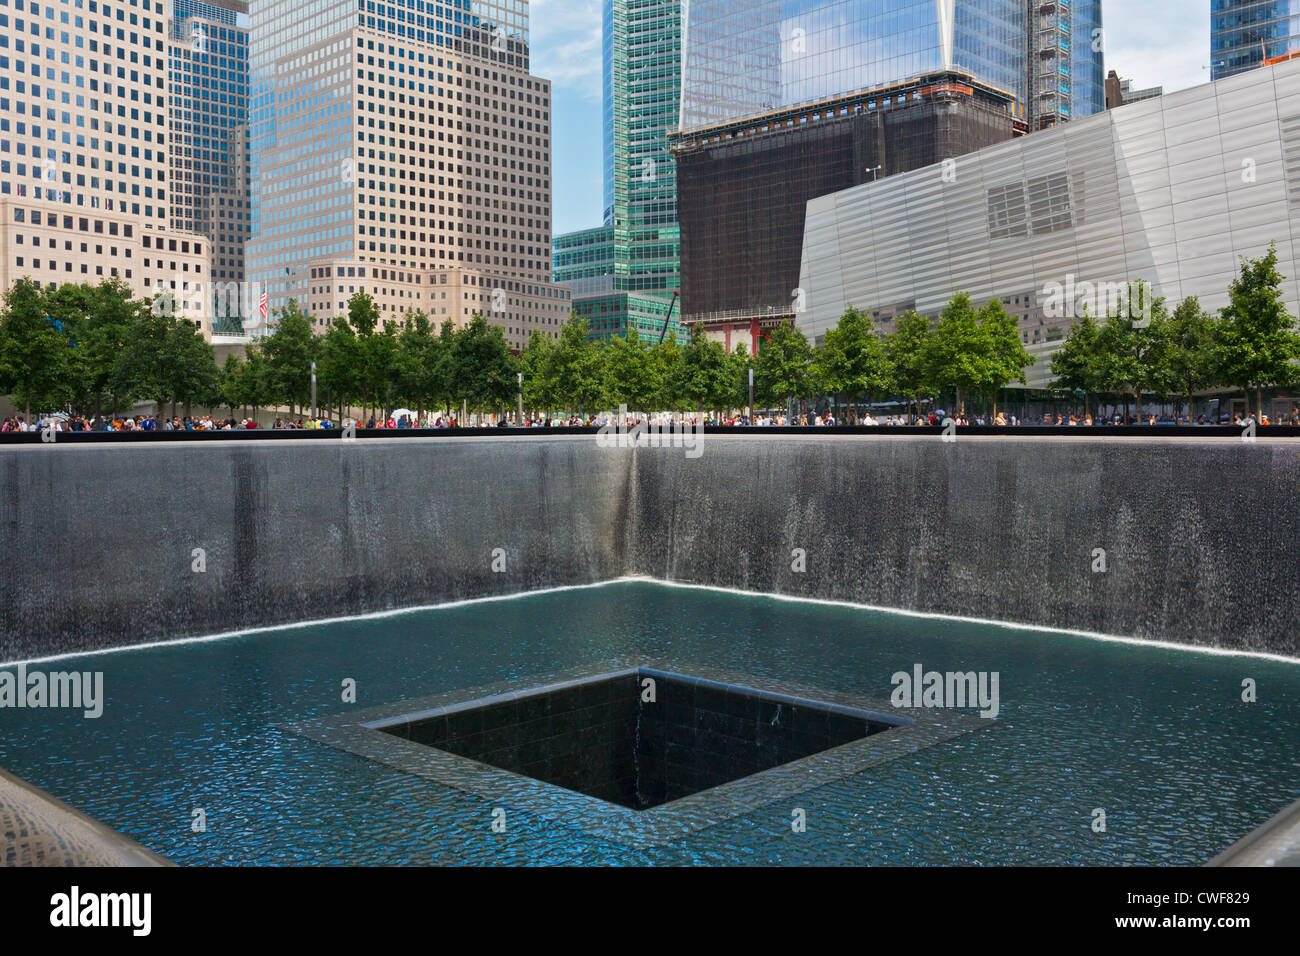 Das National September 11 Memorial in New York City, entworfen von Arad und Walker, am 10. Jahrestag der Anschläge eröffnet Stockfoto